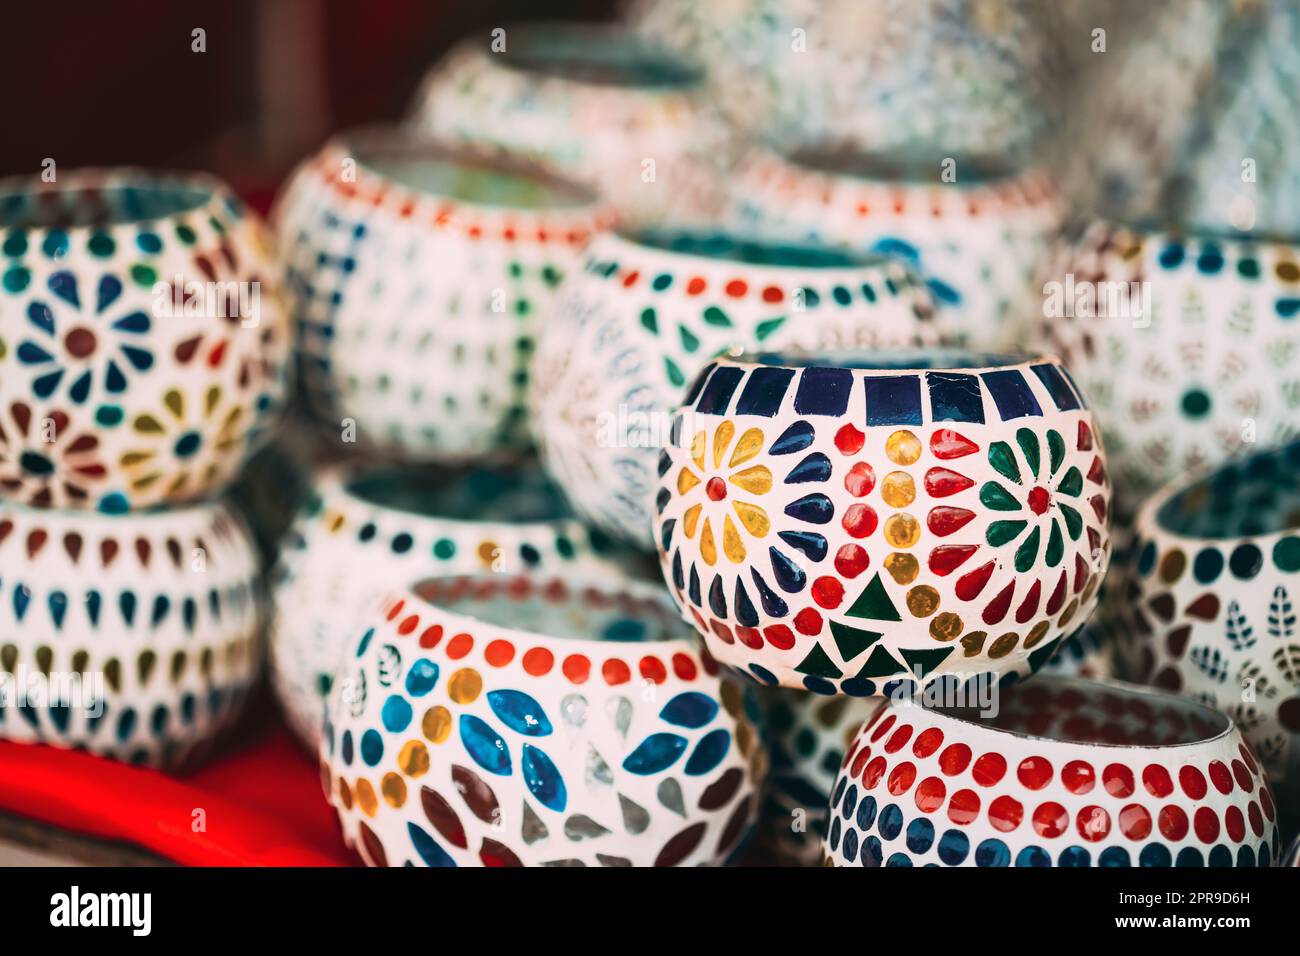 Inde. Marché avec de nombreuses bougies traditionnelles colorées en céramique de mosaïque indienne faite à la main. Souvenirs populaires de l'Inde Banque D'Images